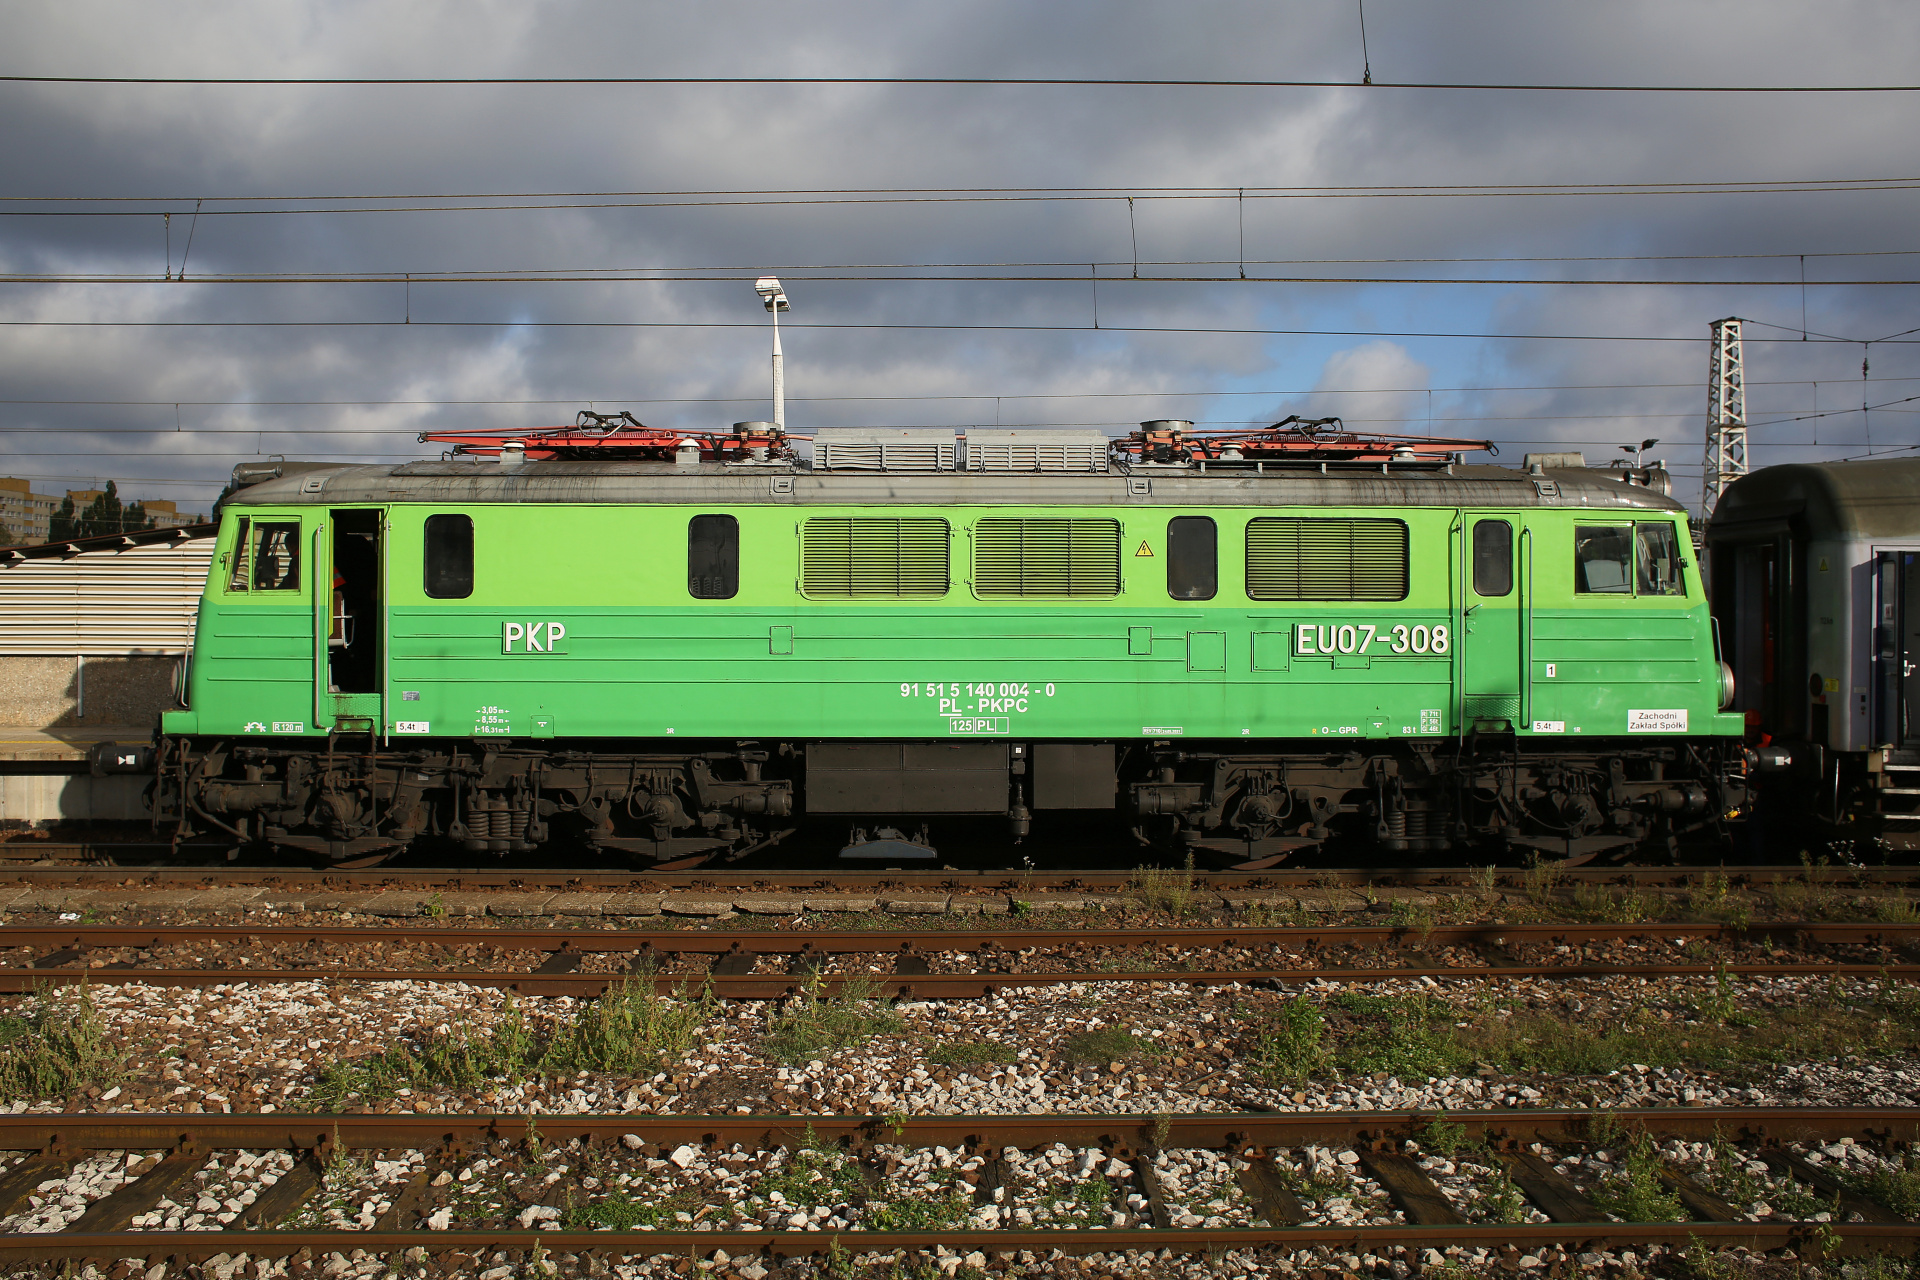 EU07-308 (retro livery) (Vehicles » Trains and Locomotives » HCP 303E)